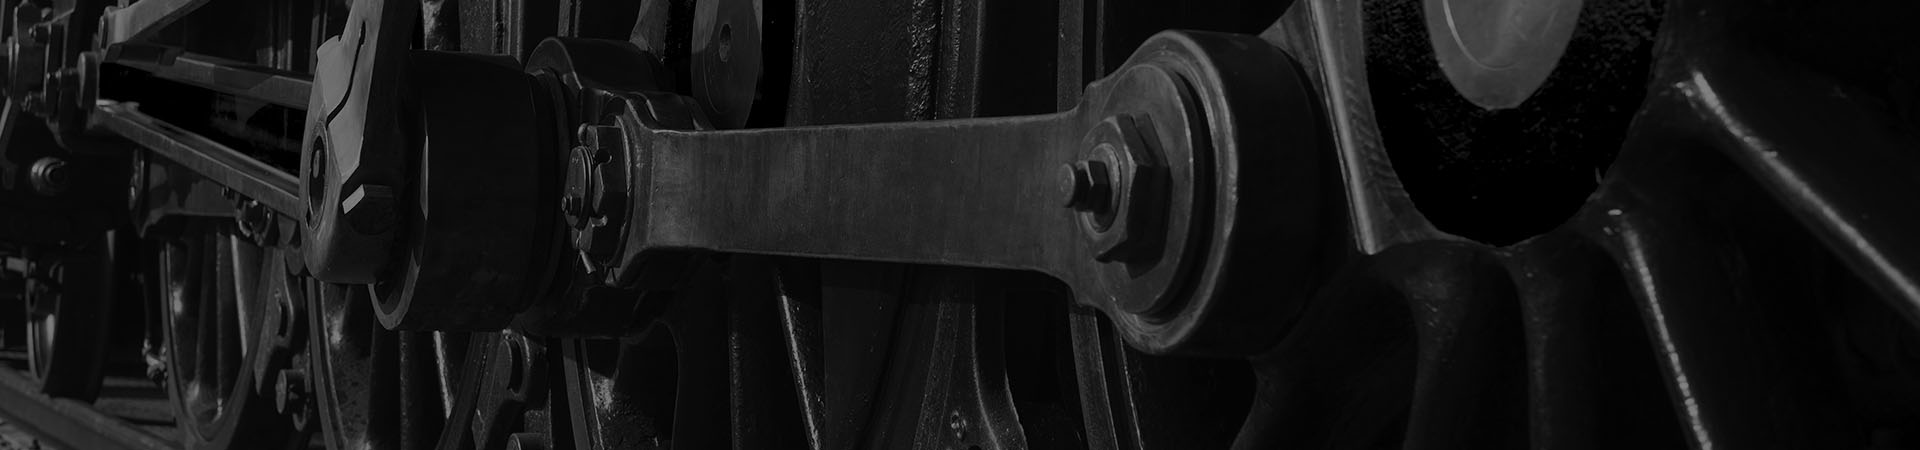 Fotografía de detalle de las ruedas de una locomotora